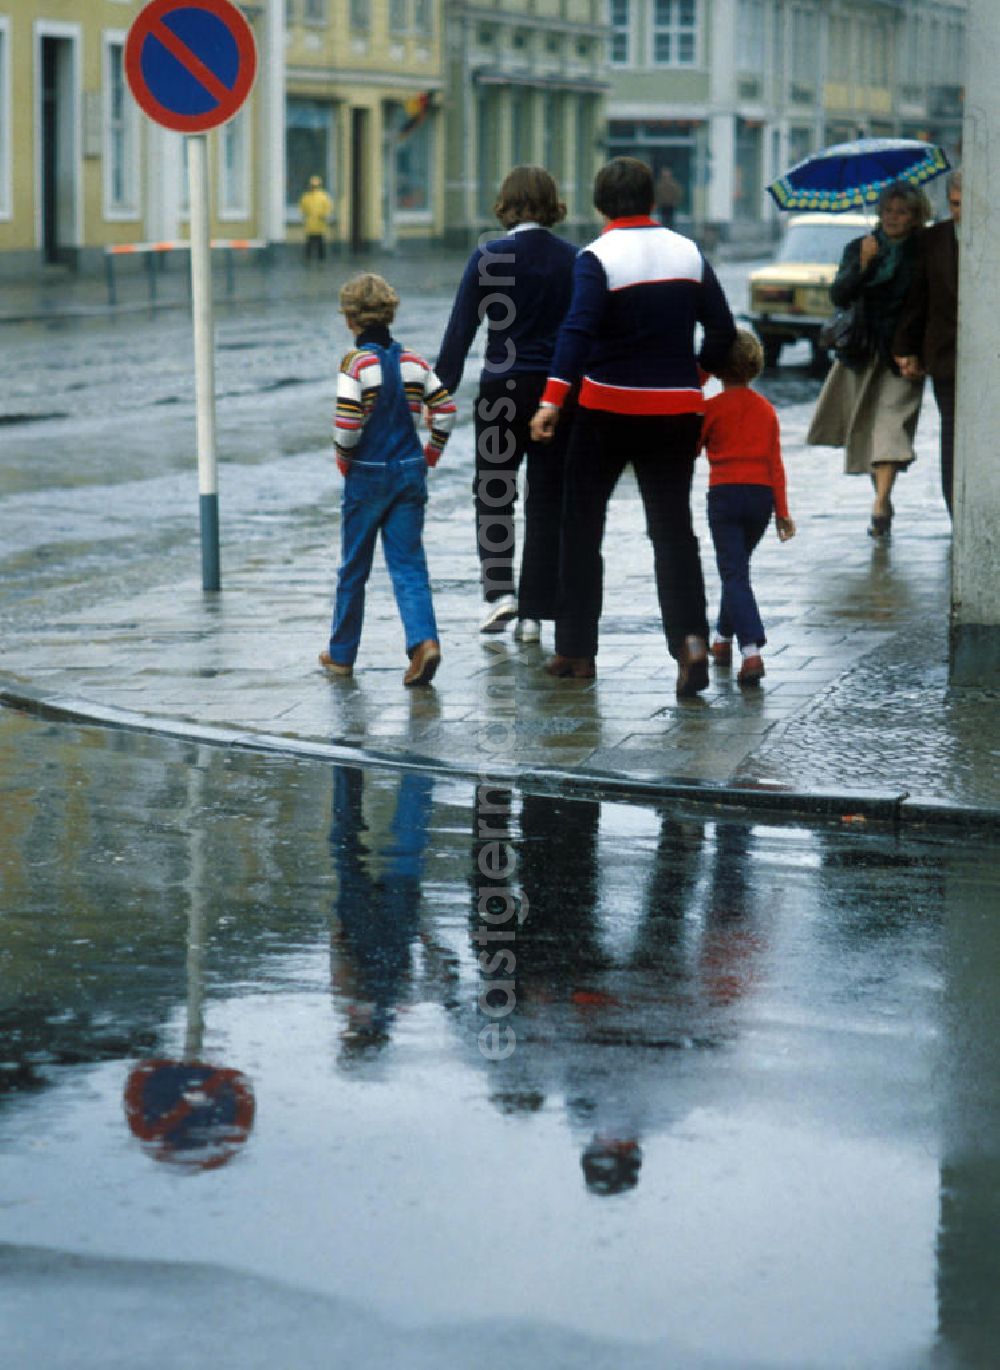 GDR photo archive: Potsdam - Straßenansicht vom Holländischen Viertel bei Regen in Potsdam. Rückansicht einer Familie mit DDR-typischer zeitgenössischer Kleidung auf dem Fußweg, daneben Schild mit Parkverbot.